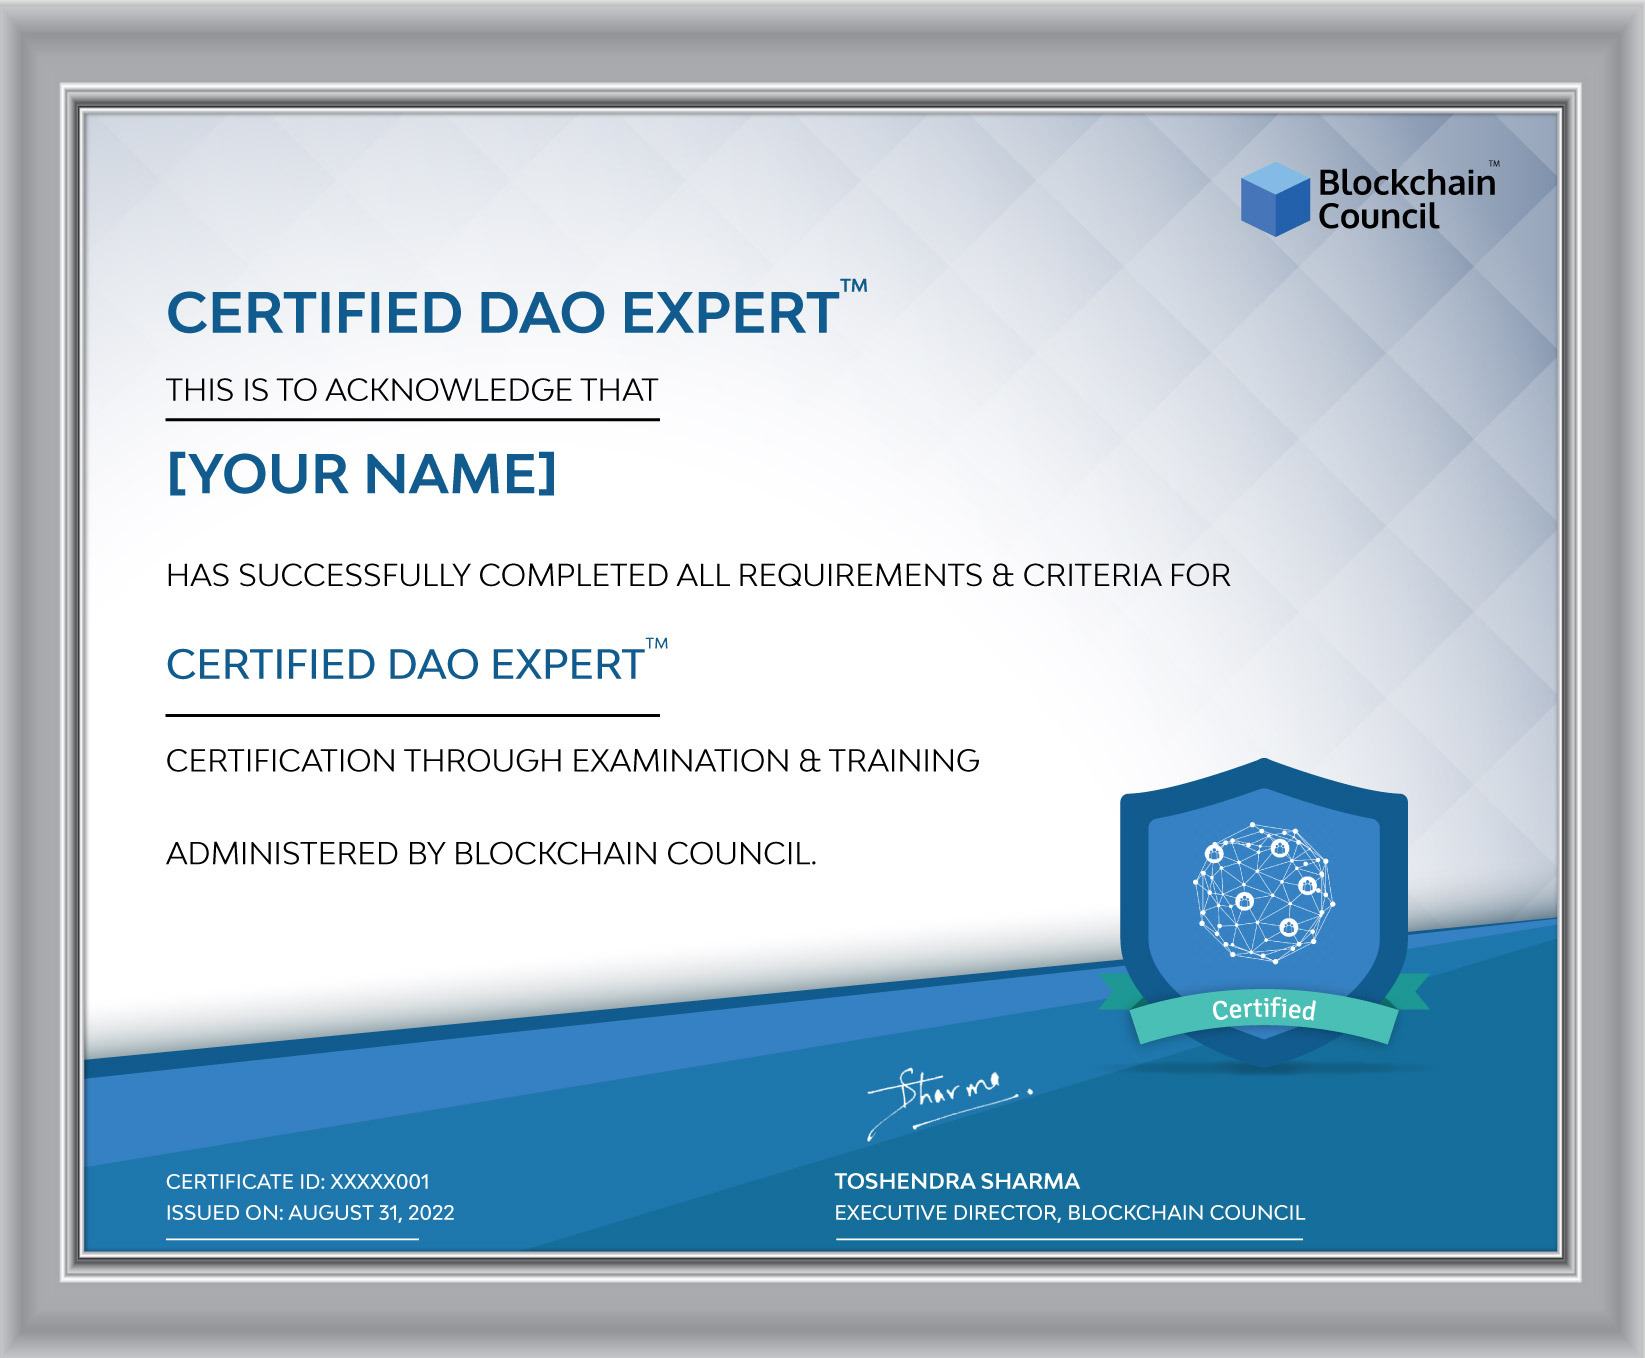 Certified DAO Expert